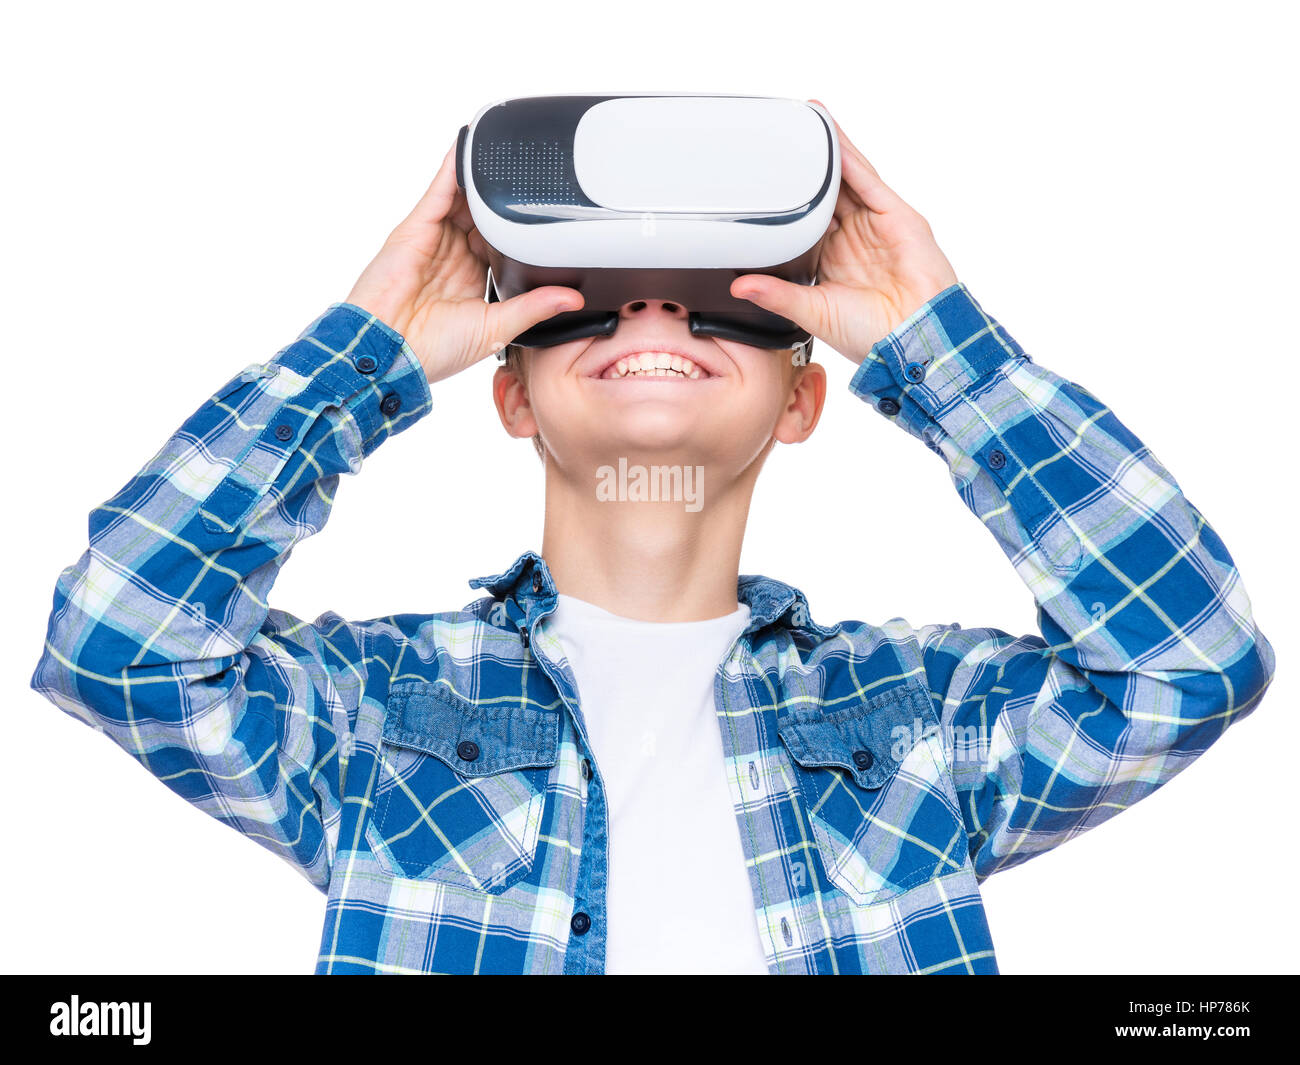 Felice teen boy indossando la realtà virtuale occhiali per guardare film o giocare con i videogiochi, isolato su sfondo bianco. Allegro sorridente adolescente cercando Foto Stock